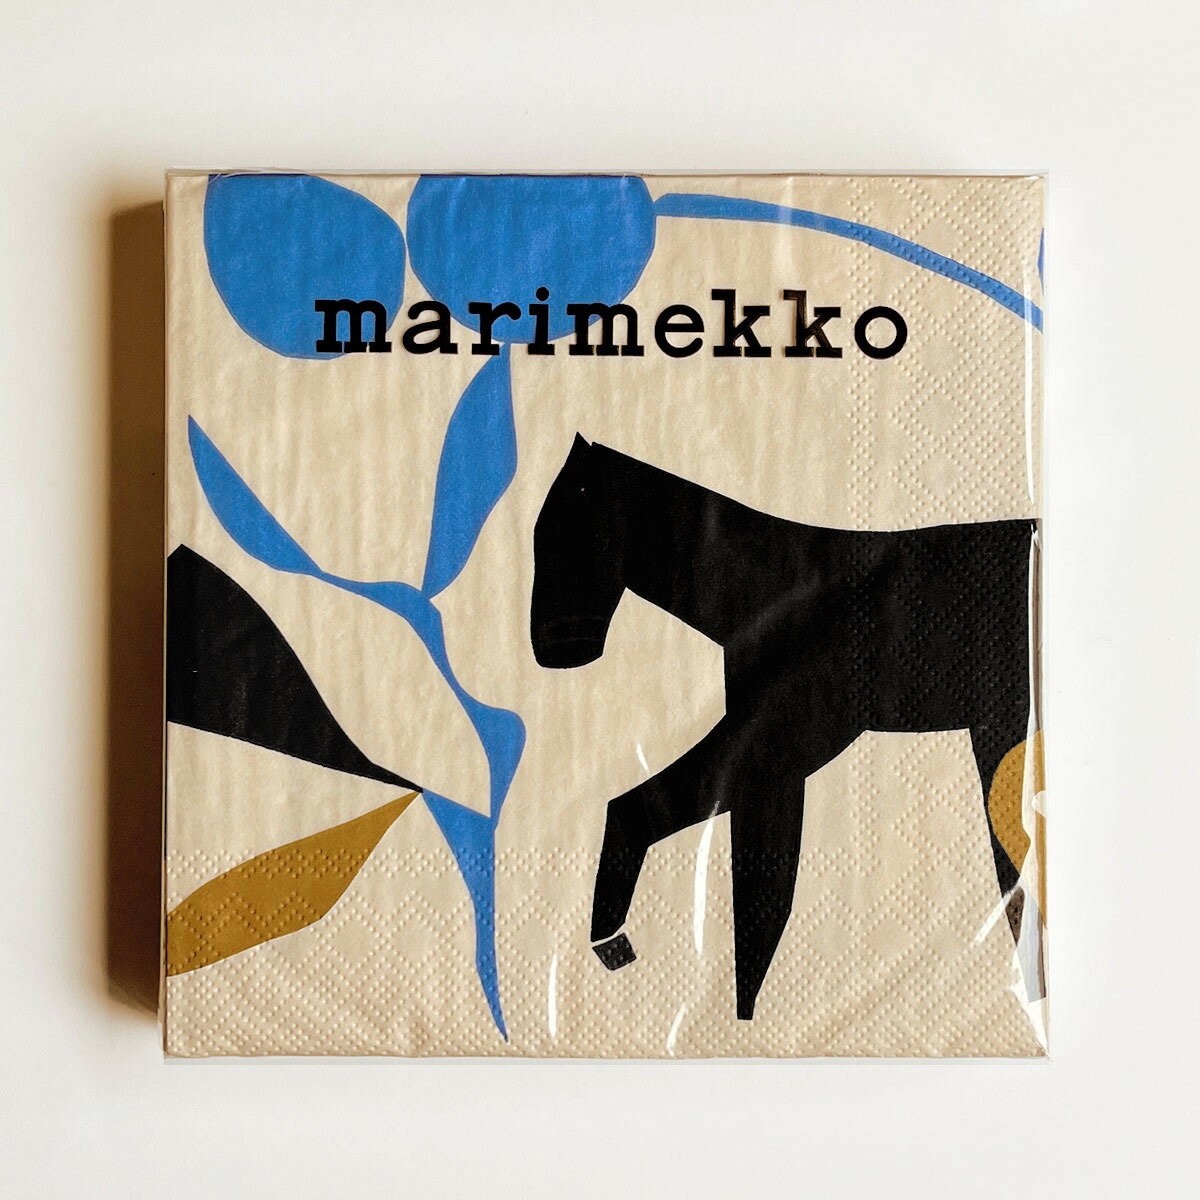 マリメッコ marimekko ペーパーナプキン 紙ナプキン ランチサイズ ihr 20枚 967460 LAIDUN ライドゥン cream ベージュ+ブルー+ブラック系 北欧